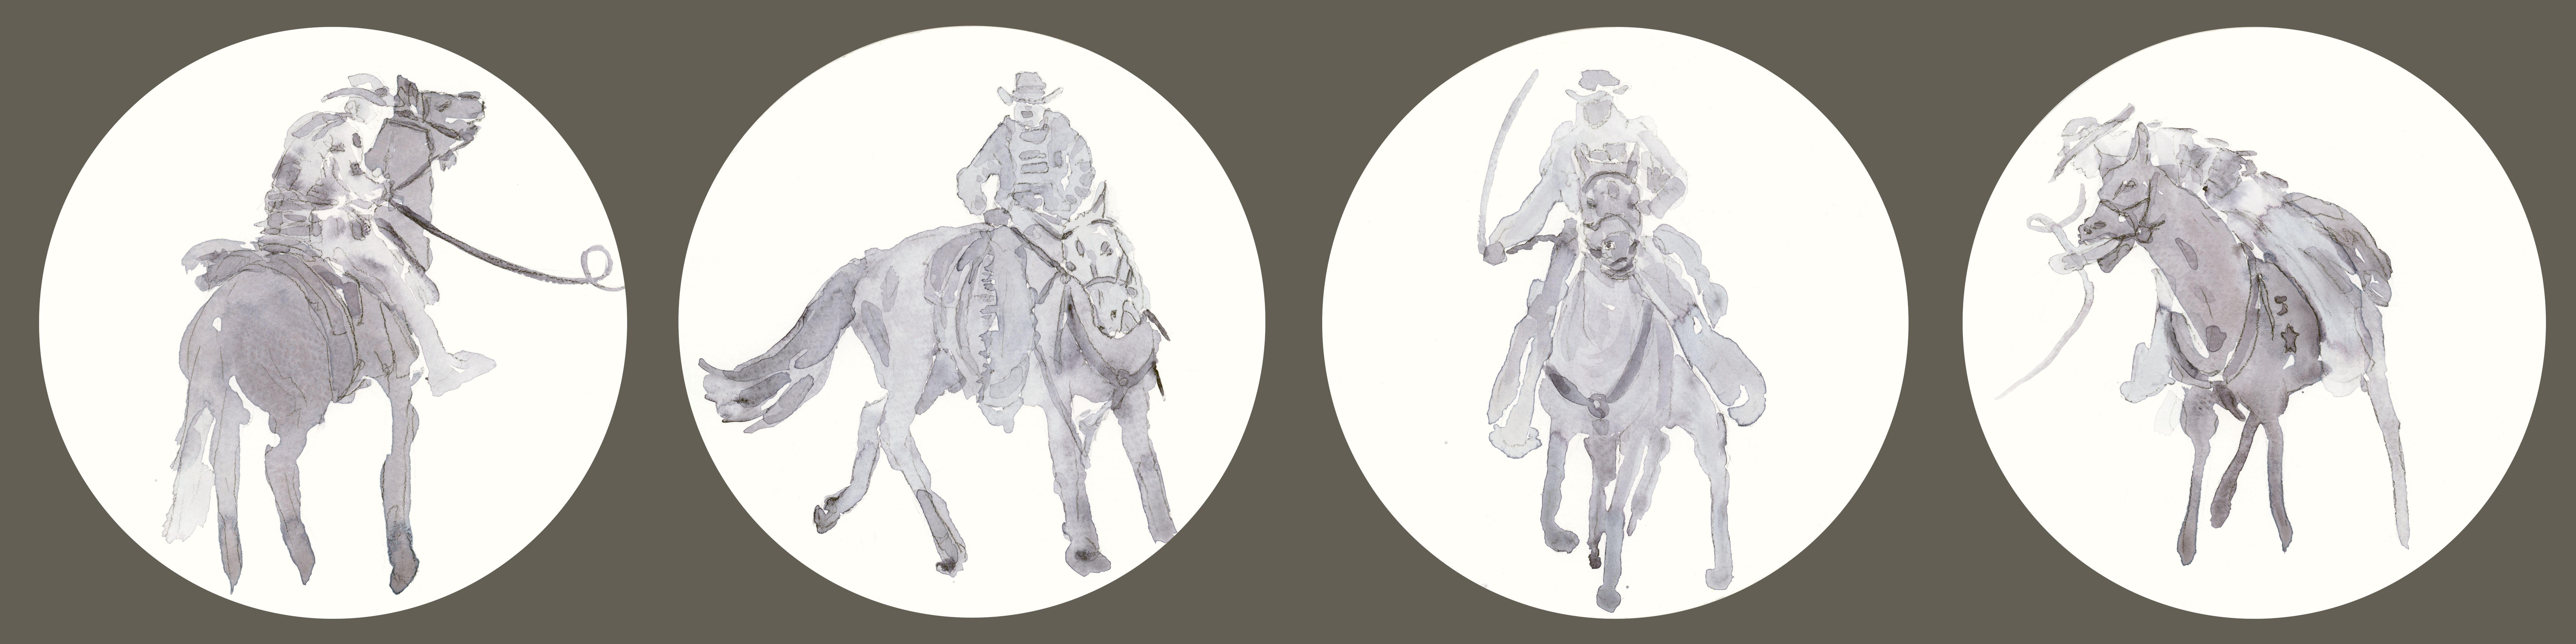 Natalia Ludmila Figurative Art - The Four Horsemen